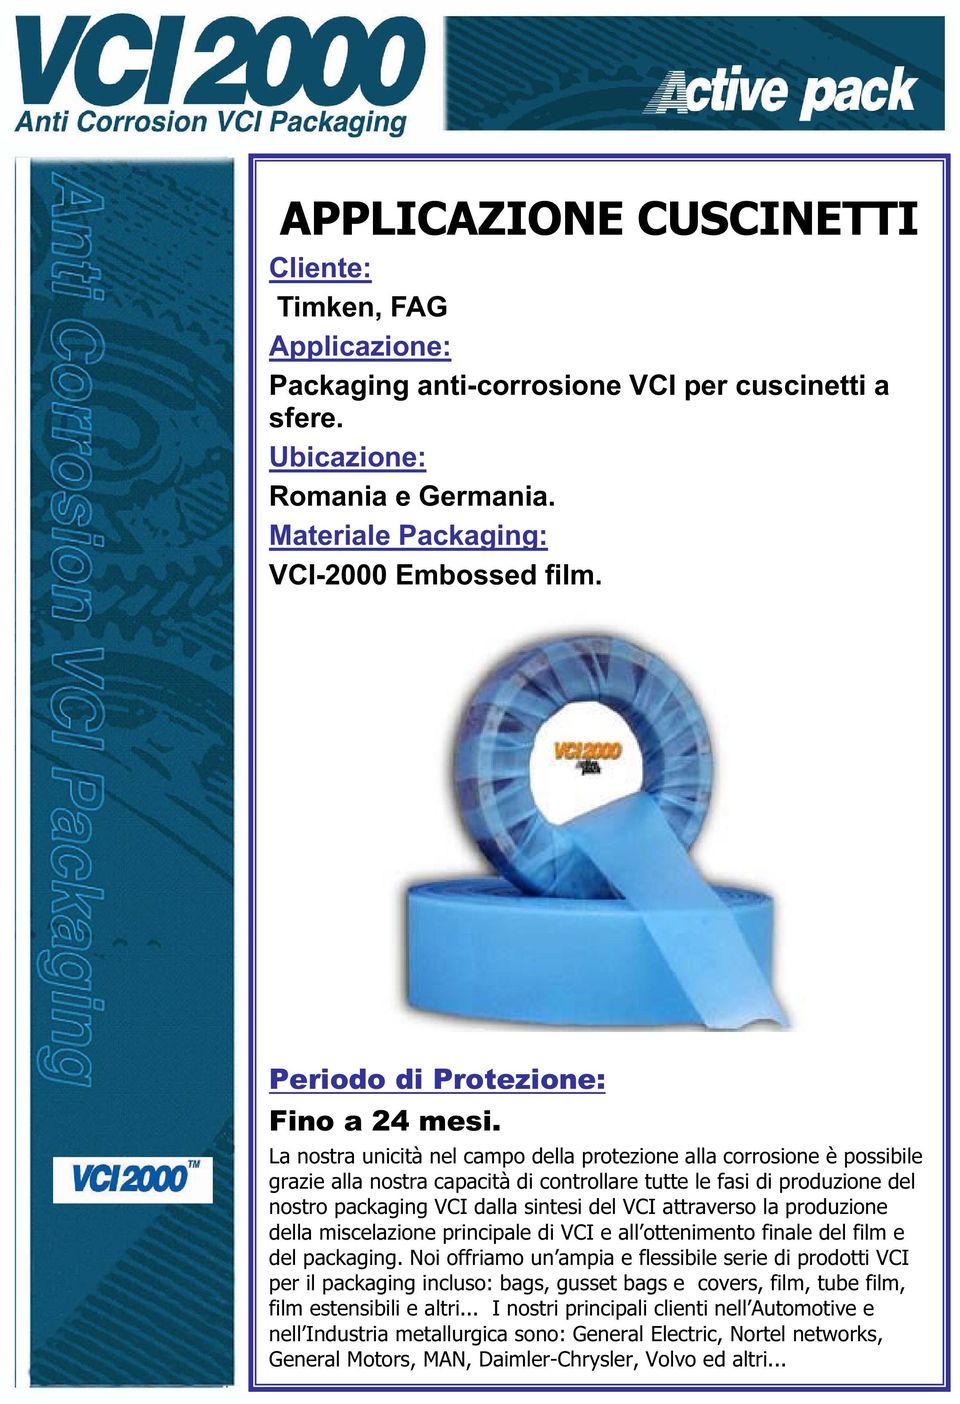 nostro packaging VCI dalla sintesi del VCI attraverso la produzione della miscelazione principale di VCI e all ottenimento